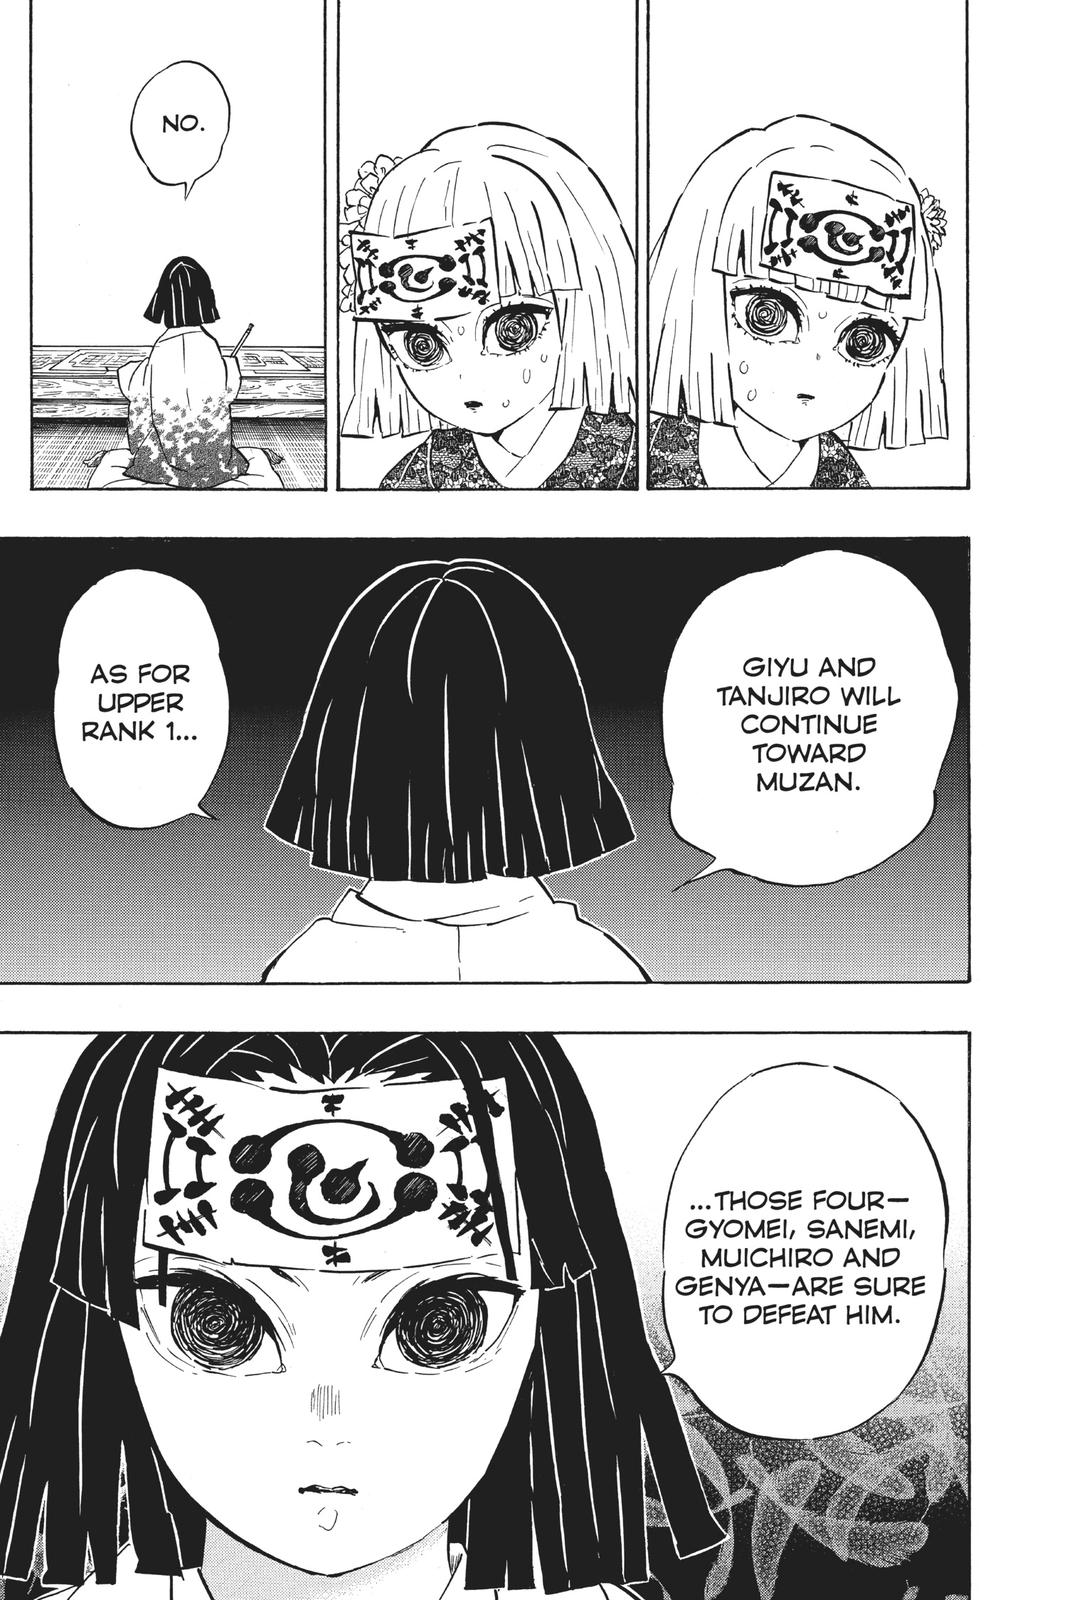 Demon Slayer Manga Manga Chapter - 172 - image 4